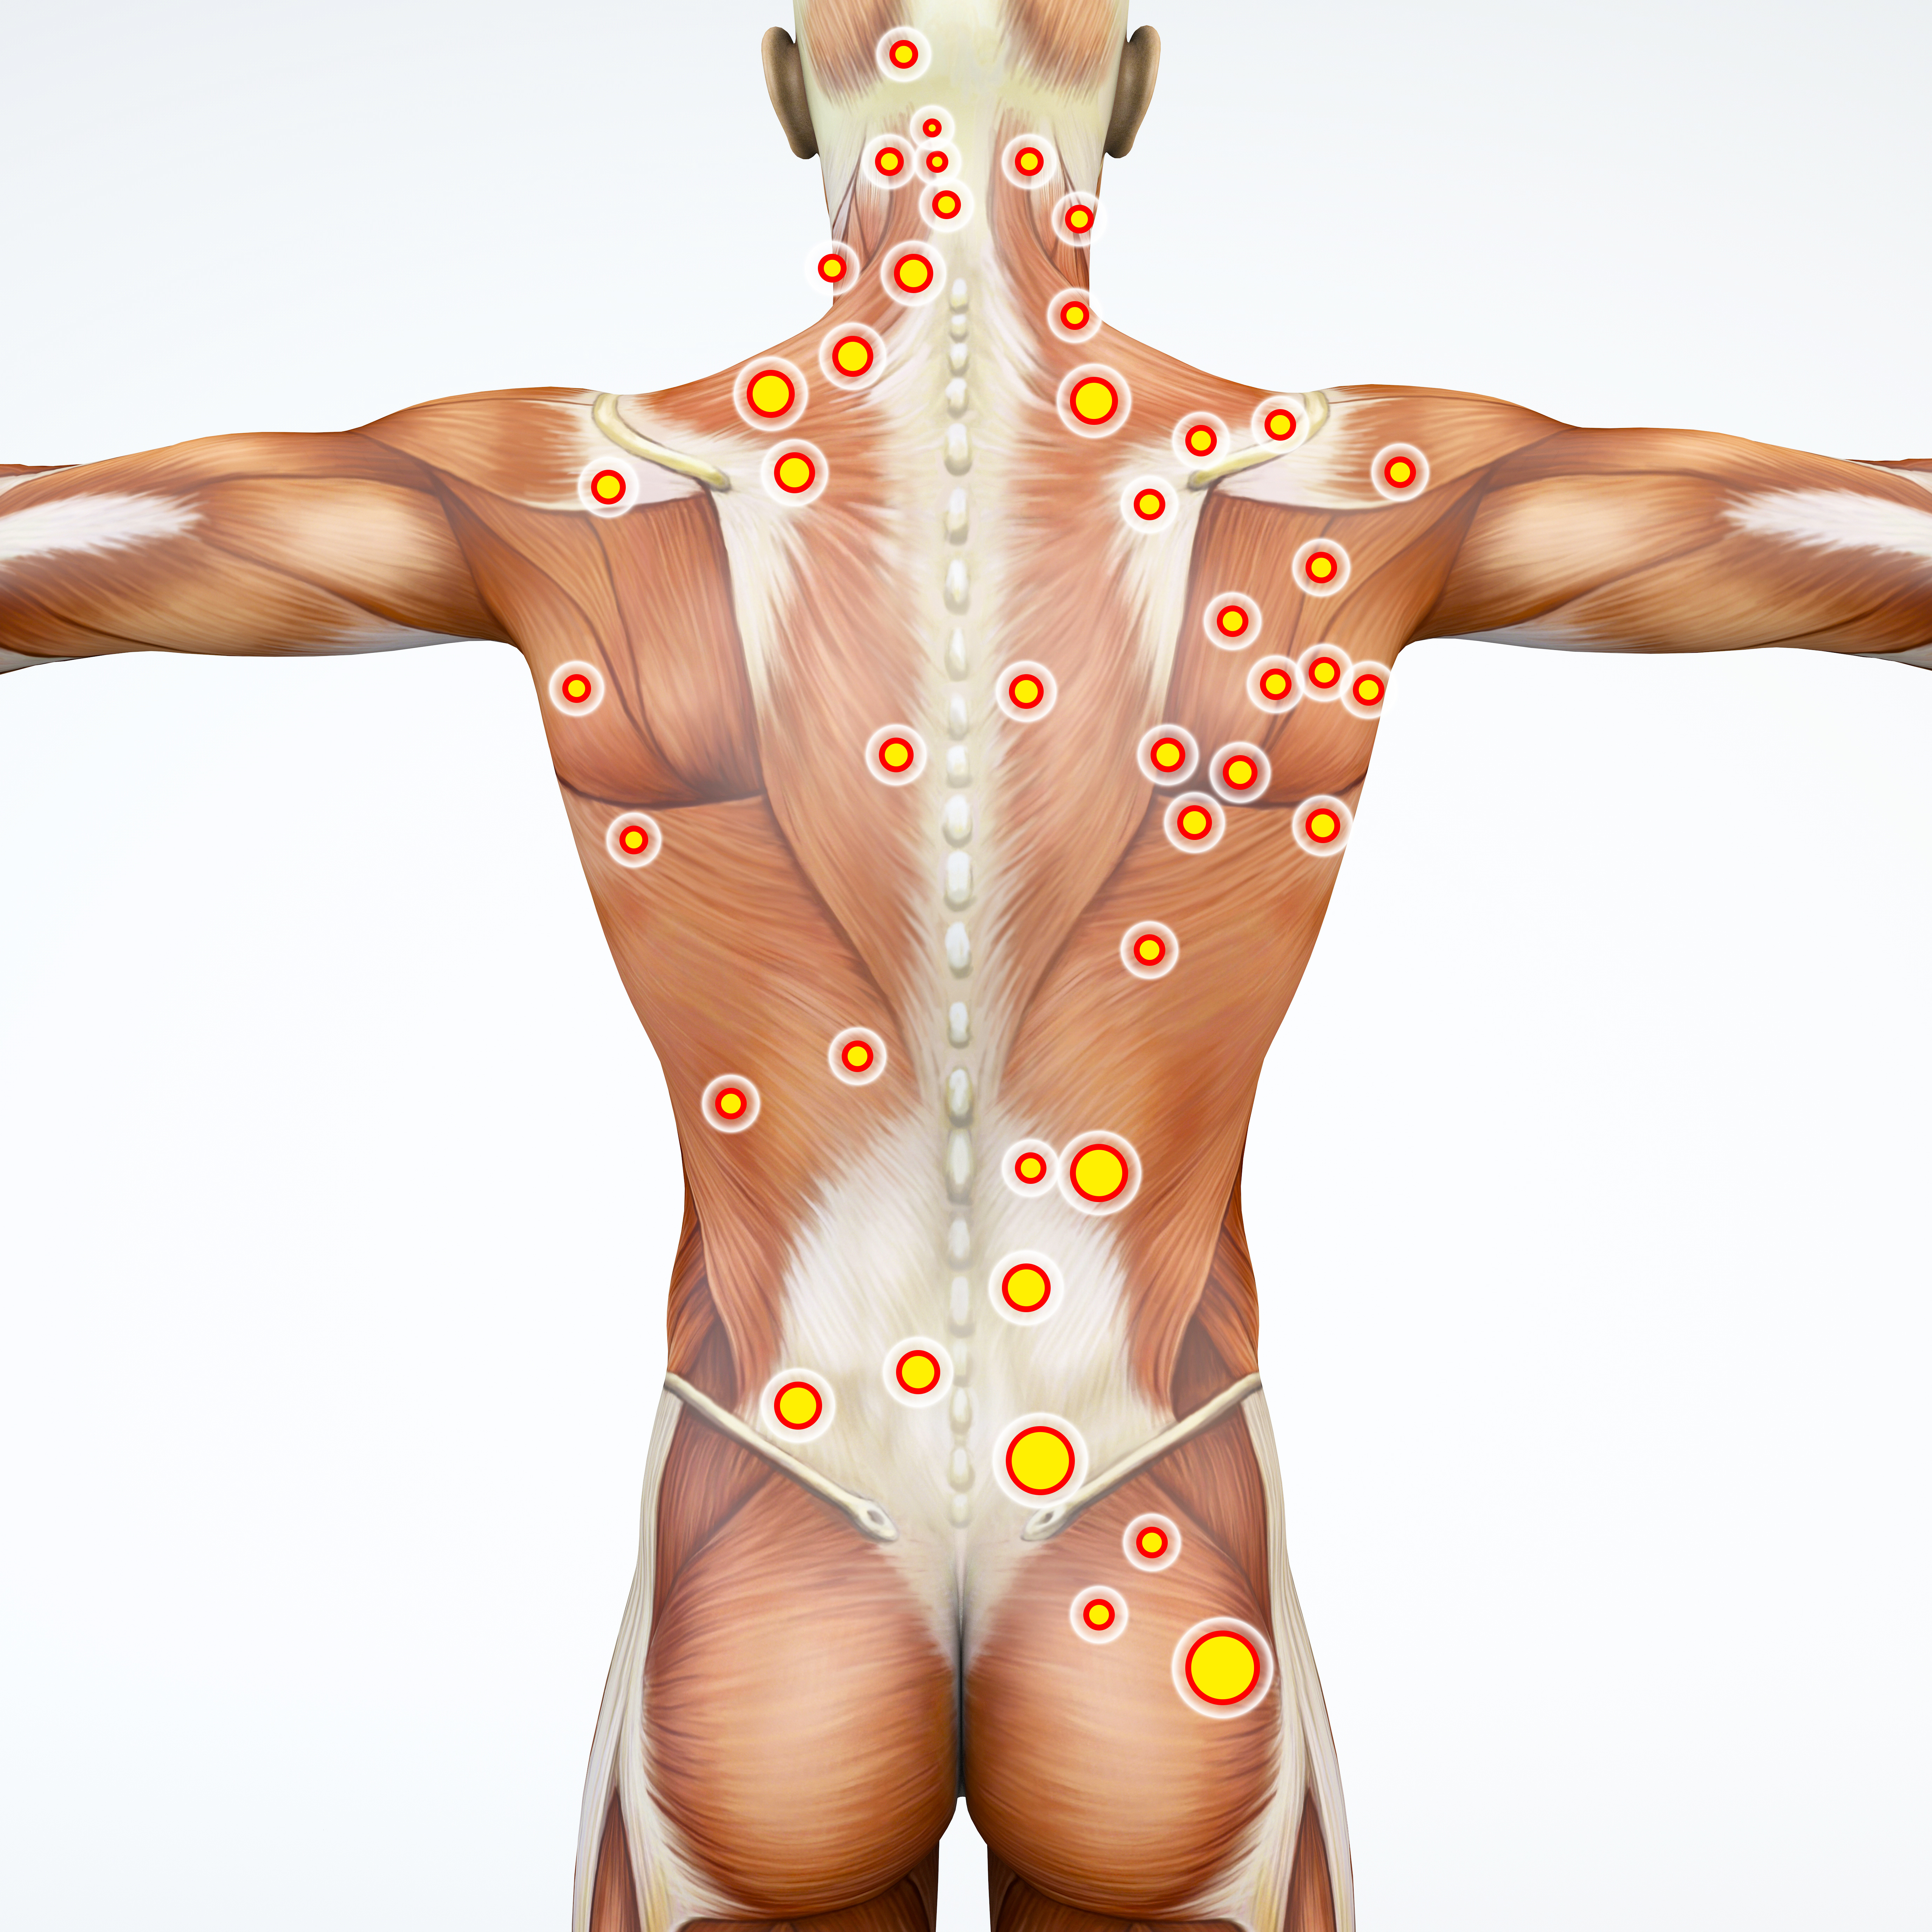 慢性痛の原因 トリガーポイント 身体の相関パターンから痛みの根源を分析することで的確に改善 解剖学生まれの 筋 筋膜 トリガーポイント講座を年3月から開催 株式会社zen Placeのプレスリリース